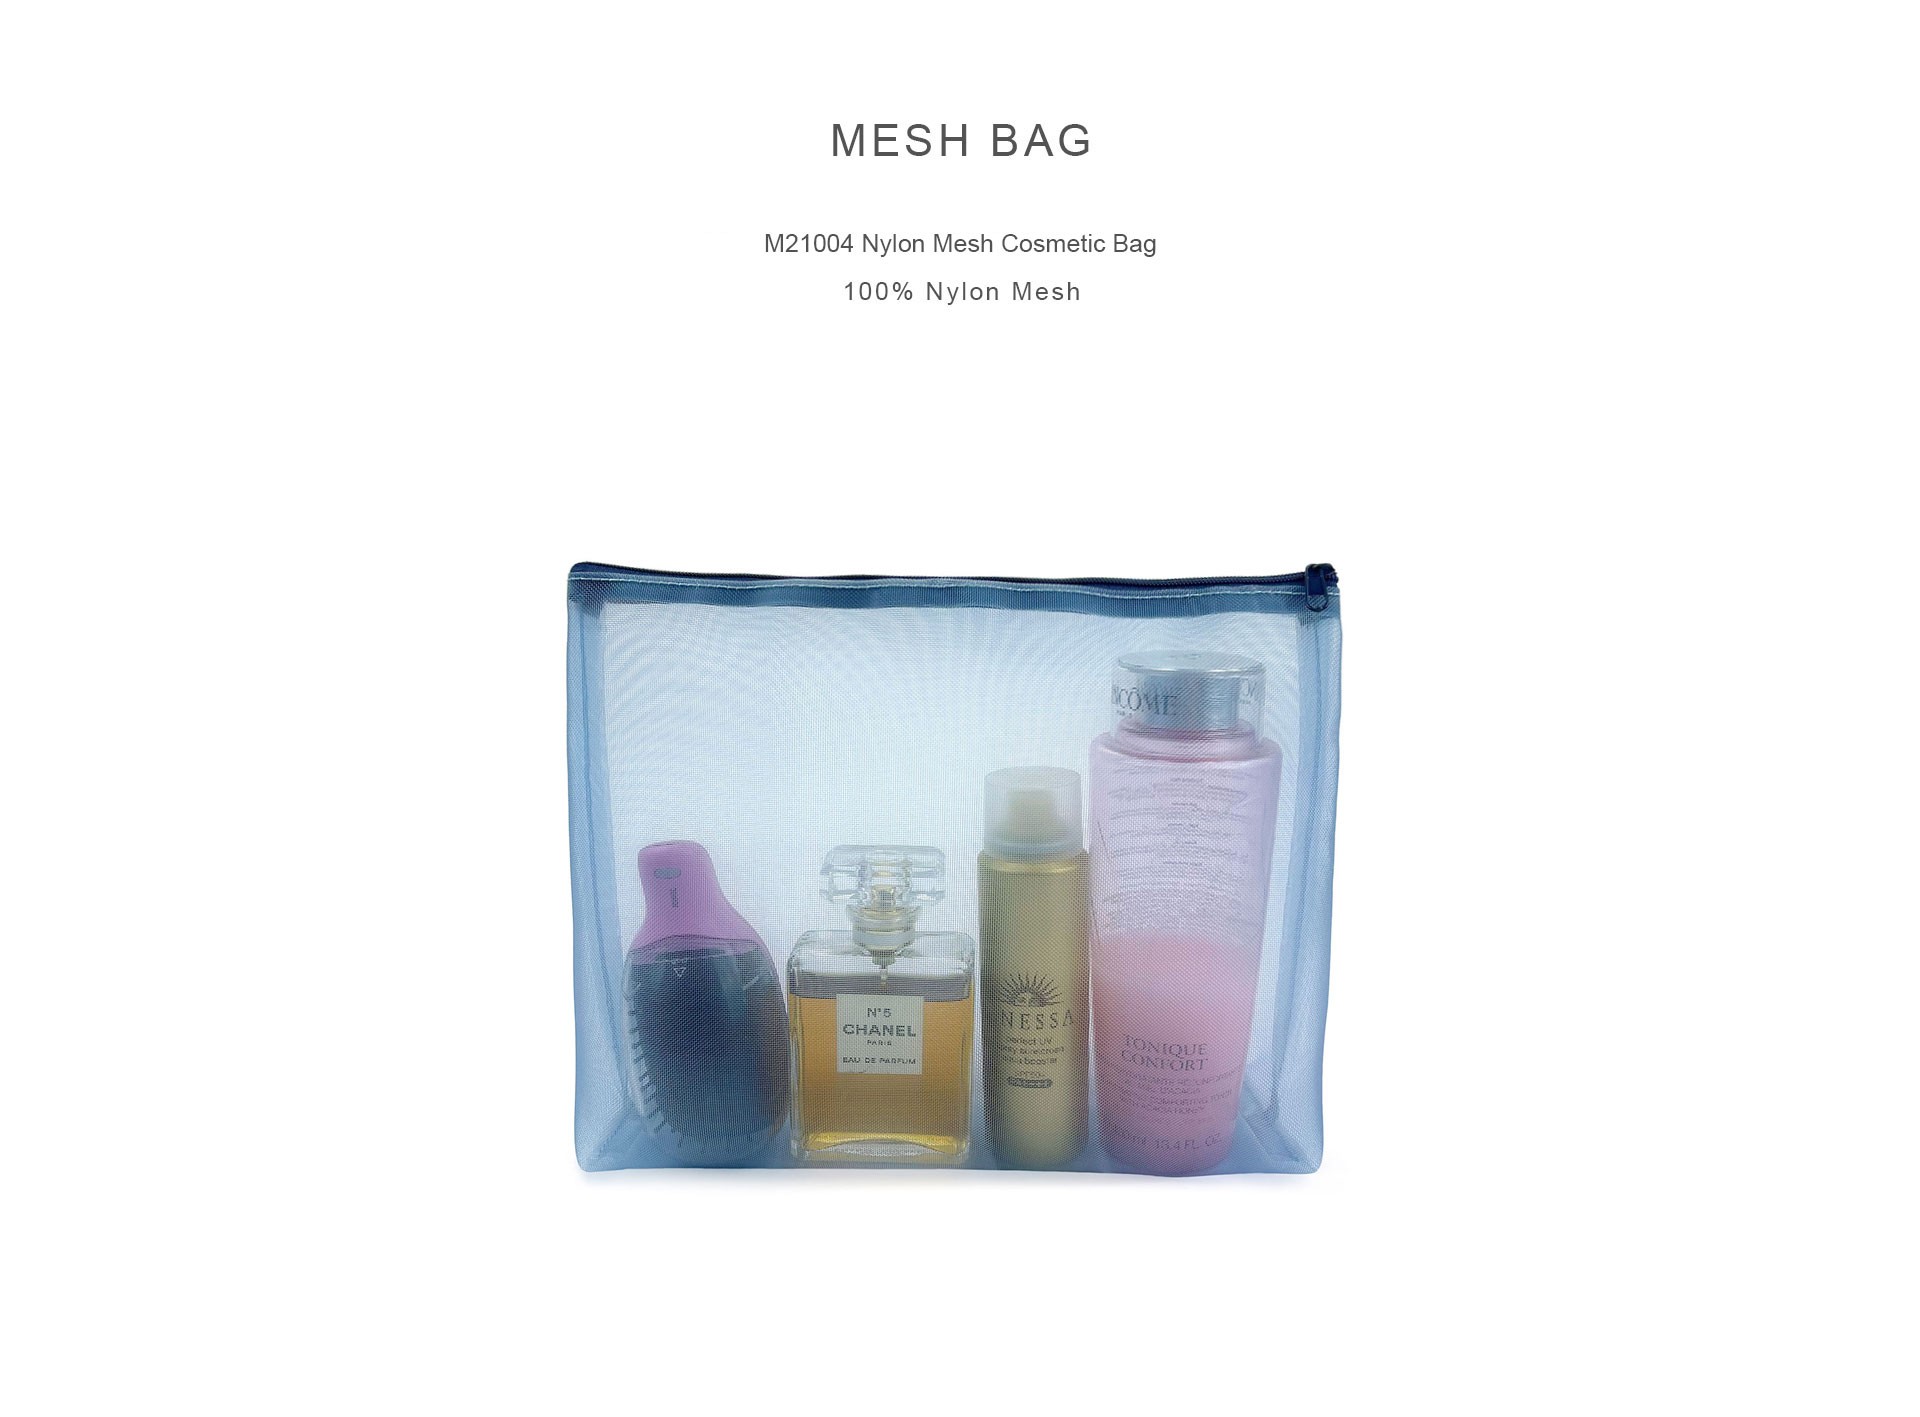 M21004 Nylon Mesh Cosmetic Bag